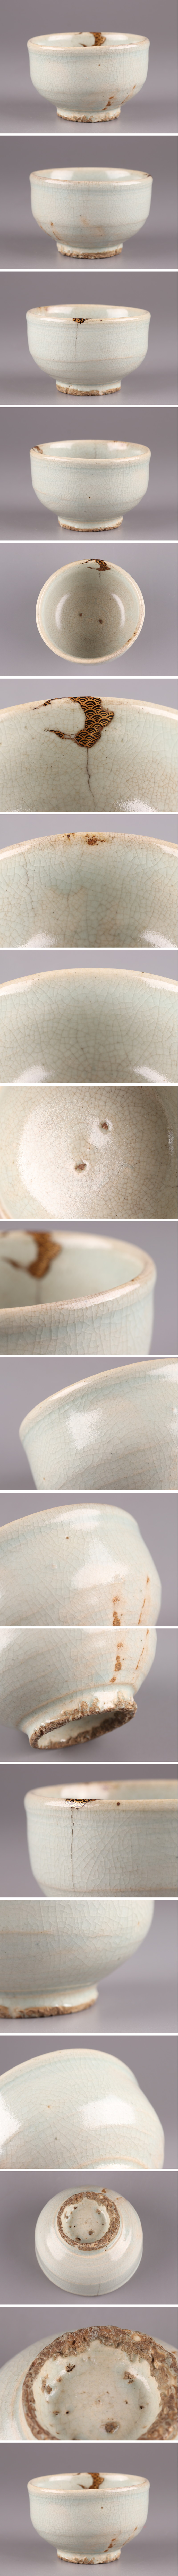 豊富な新作古美術 朝鮮古陶磁器 李朝 白磁 茶碗 時代物 極上品 初だし品 3167 李朝